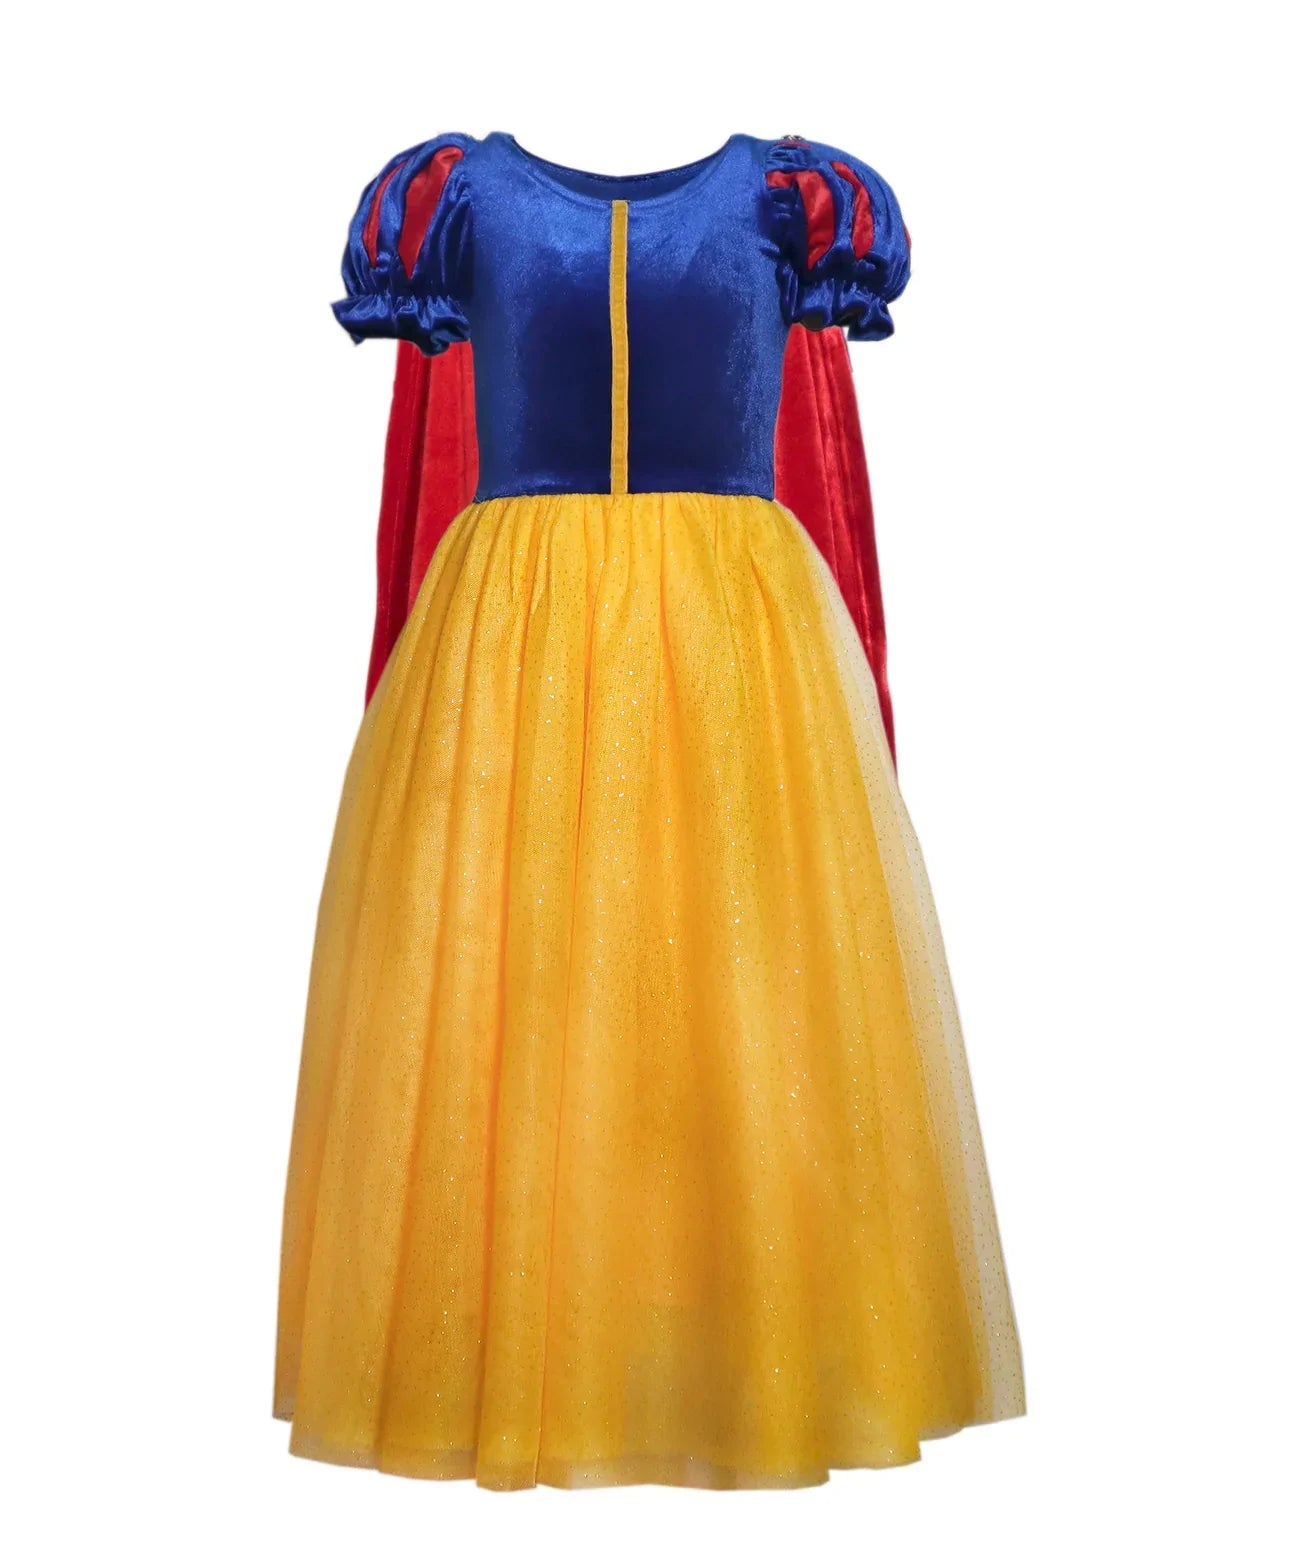 Joy Costumes Costume Dress: Fairest Princess